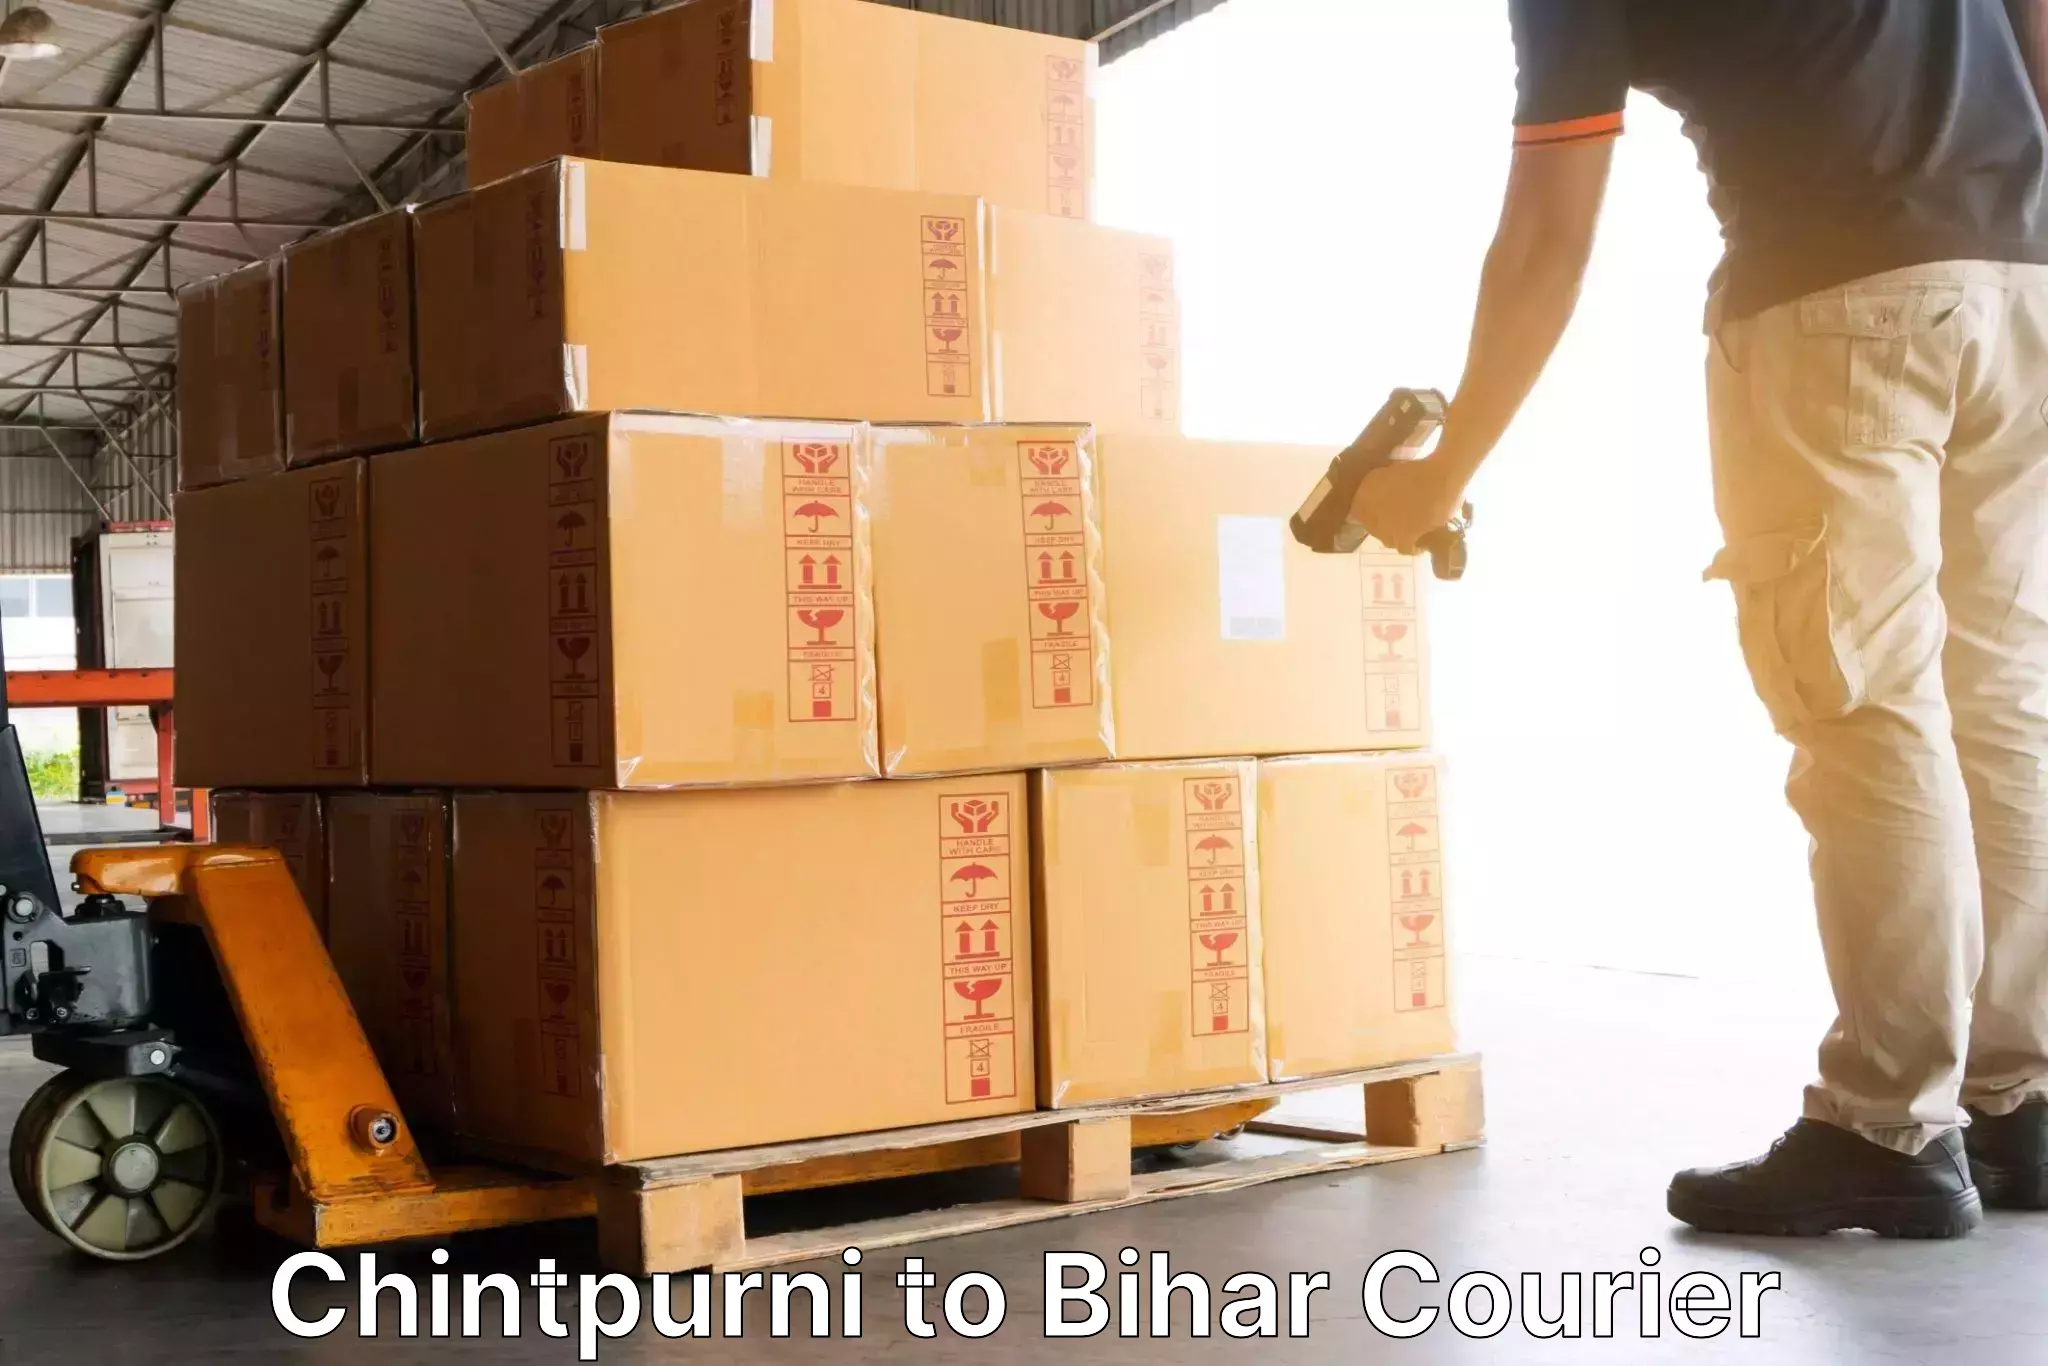 Customer-centric shipping in Chintpurni to Alamnagar